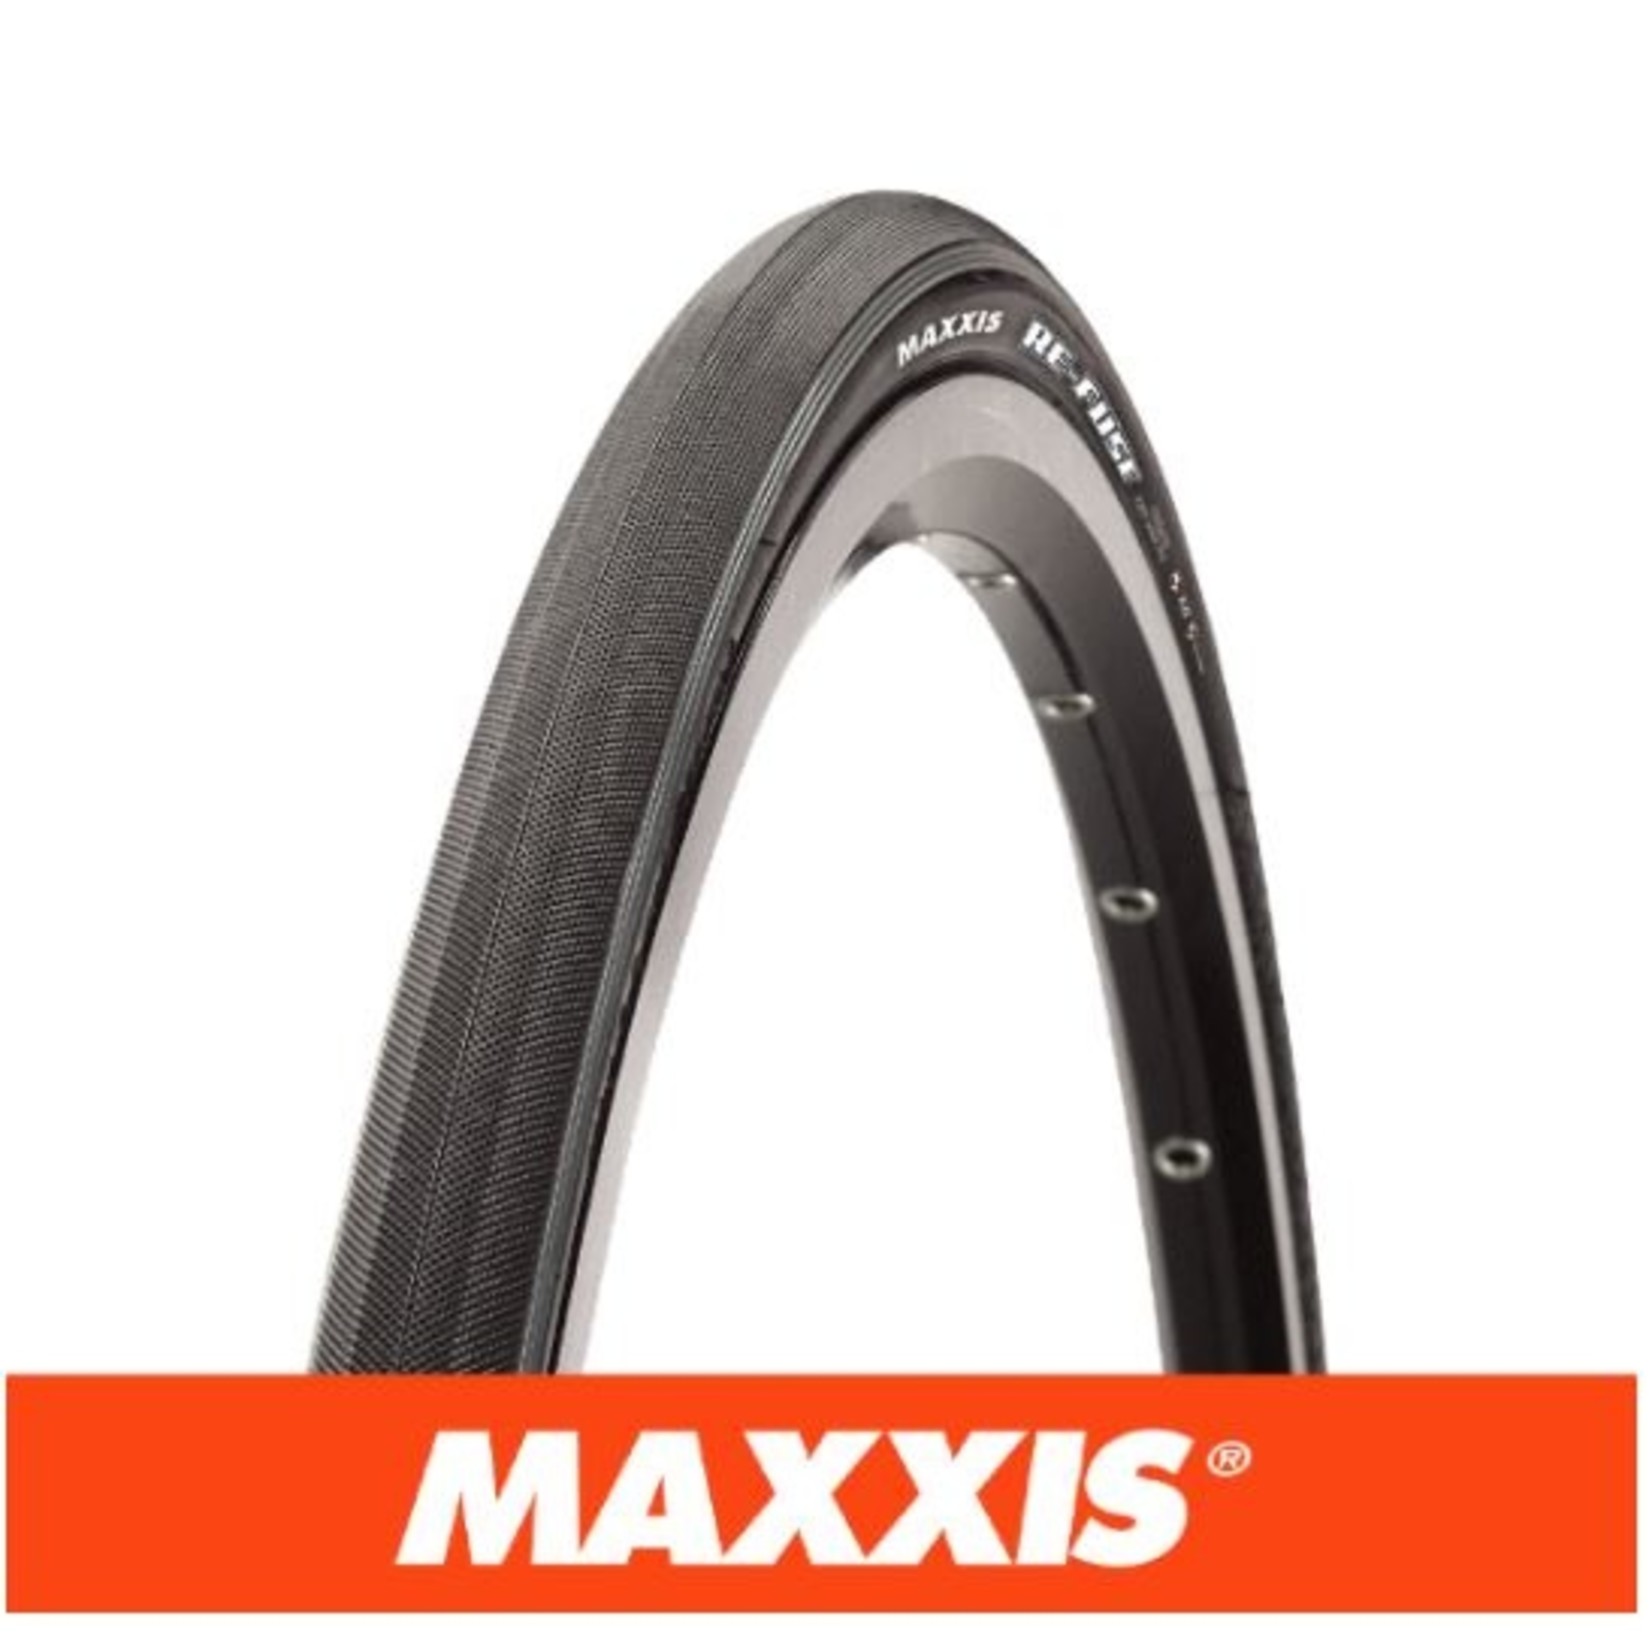 Maxxis Maxxis Refuse Bike Tyre - 700 X 23 - Folding 60Tpi Maxxshield - Black